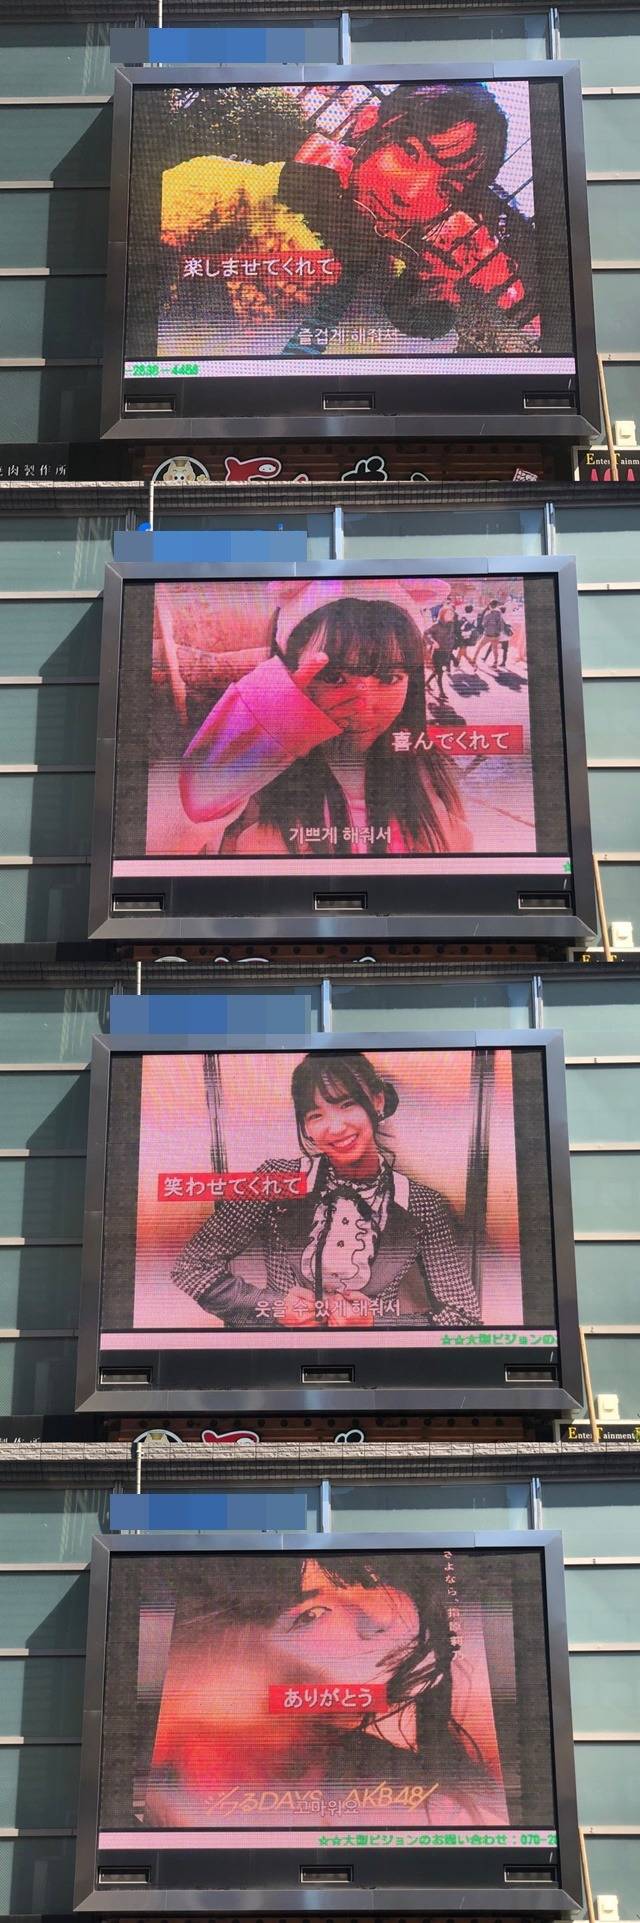 시타오 미우 생일 축하해! 3일 일본 도쿄에 위치한 전광판에서 가수 시타오 미우 생일 축하 영상이 상영 중이다. /팬앤스타